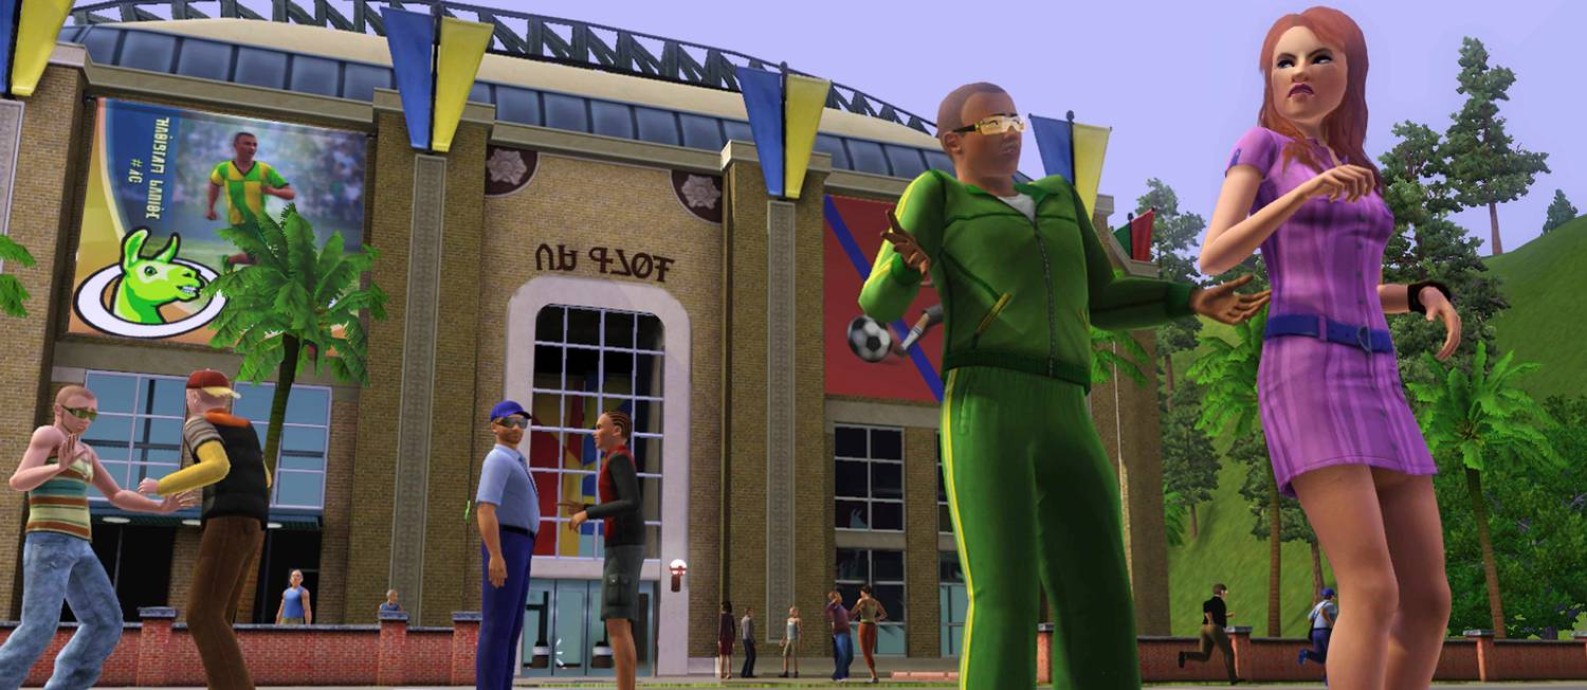 O jogo "The Sims 3": projeto original dos desenvolvedores era fazer uma crítica da cultura de consumo Foto: Reprodução